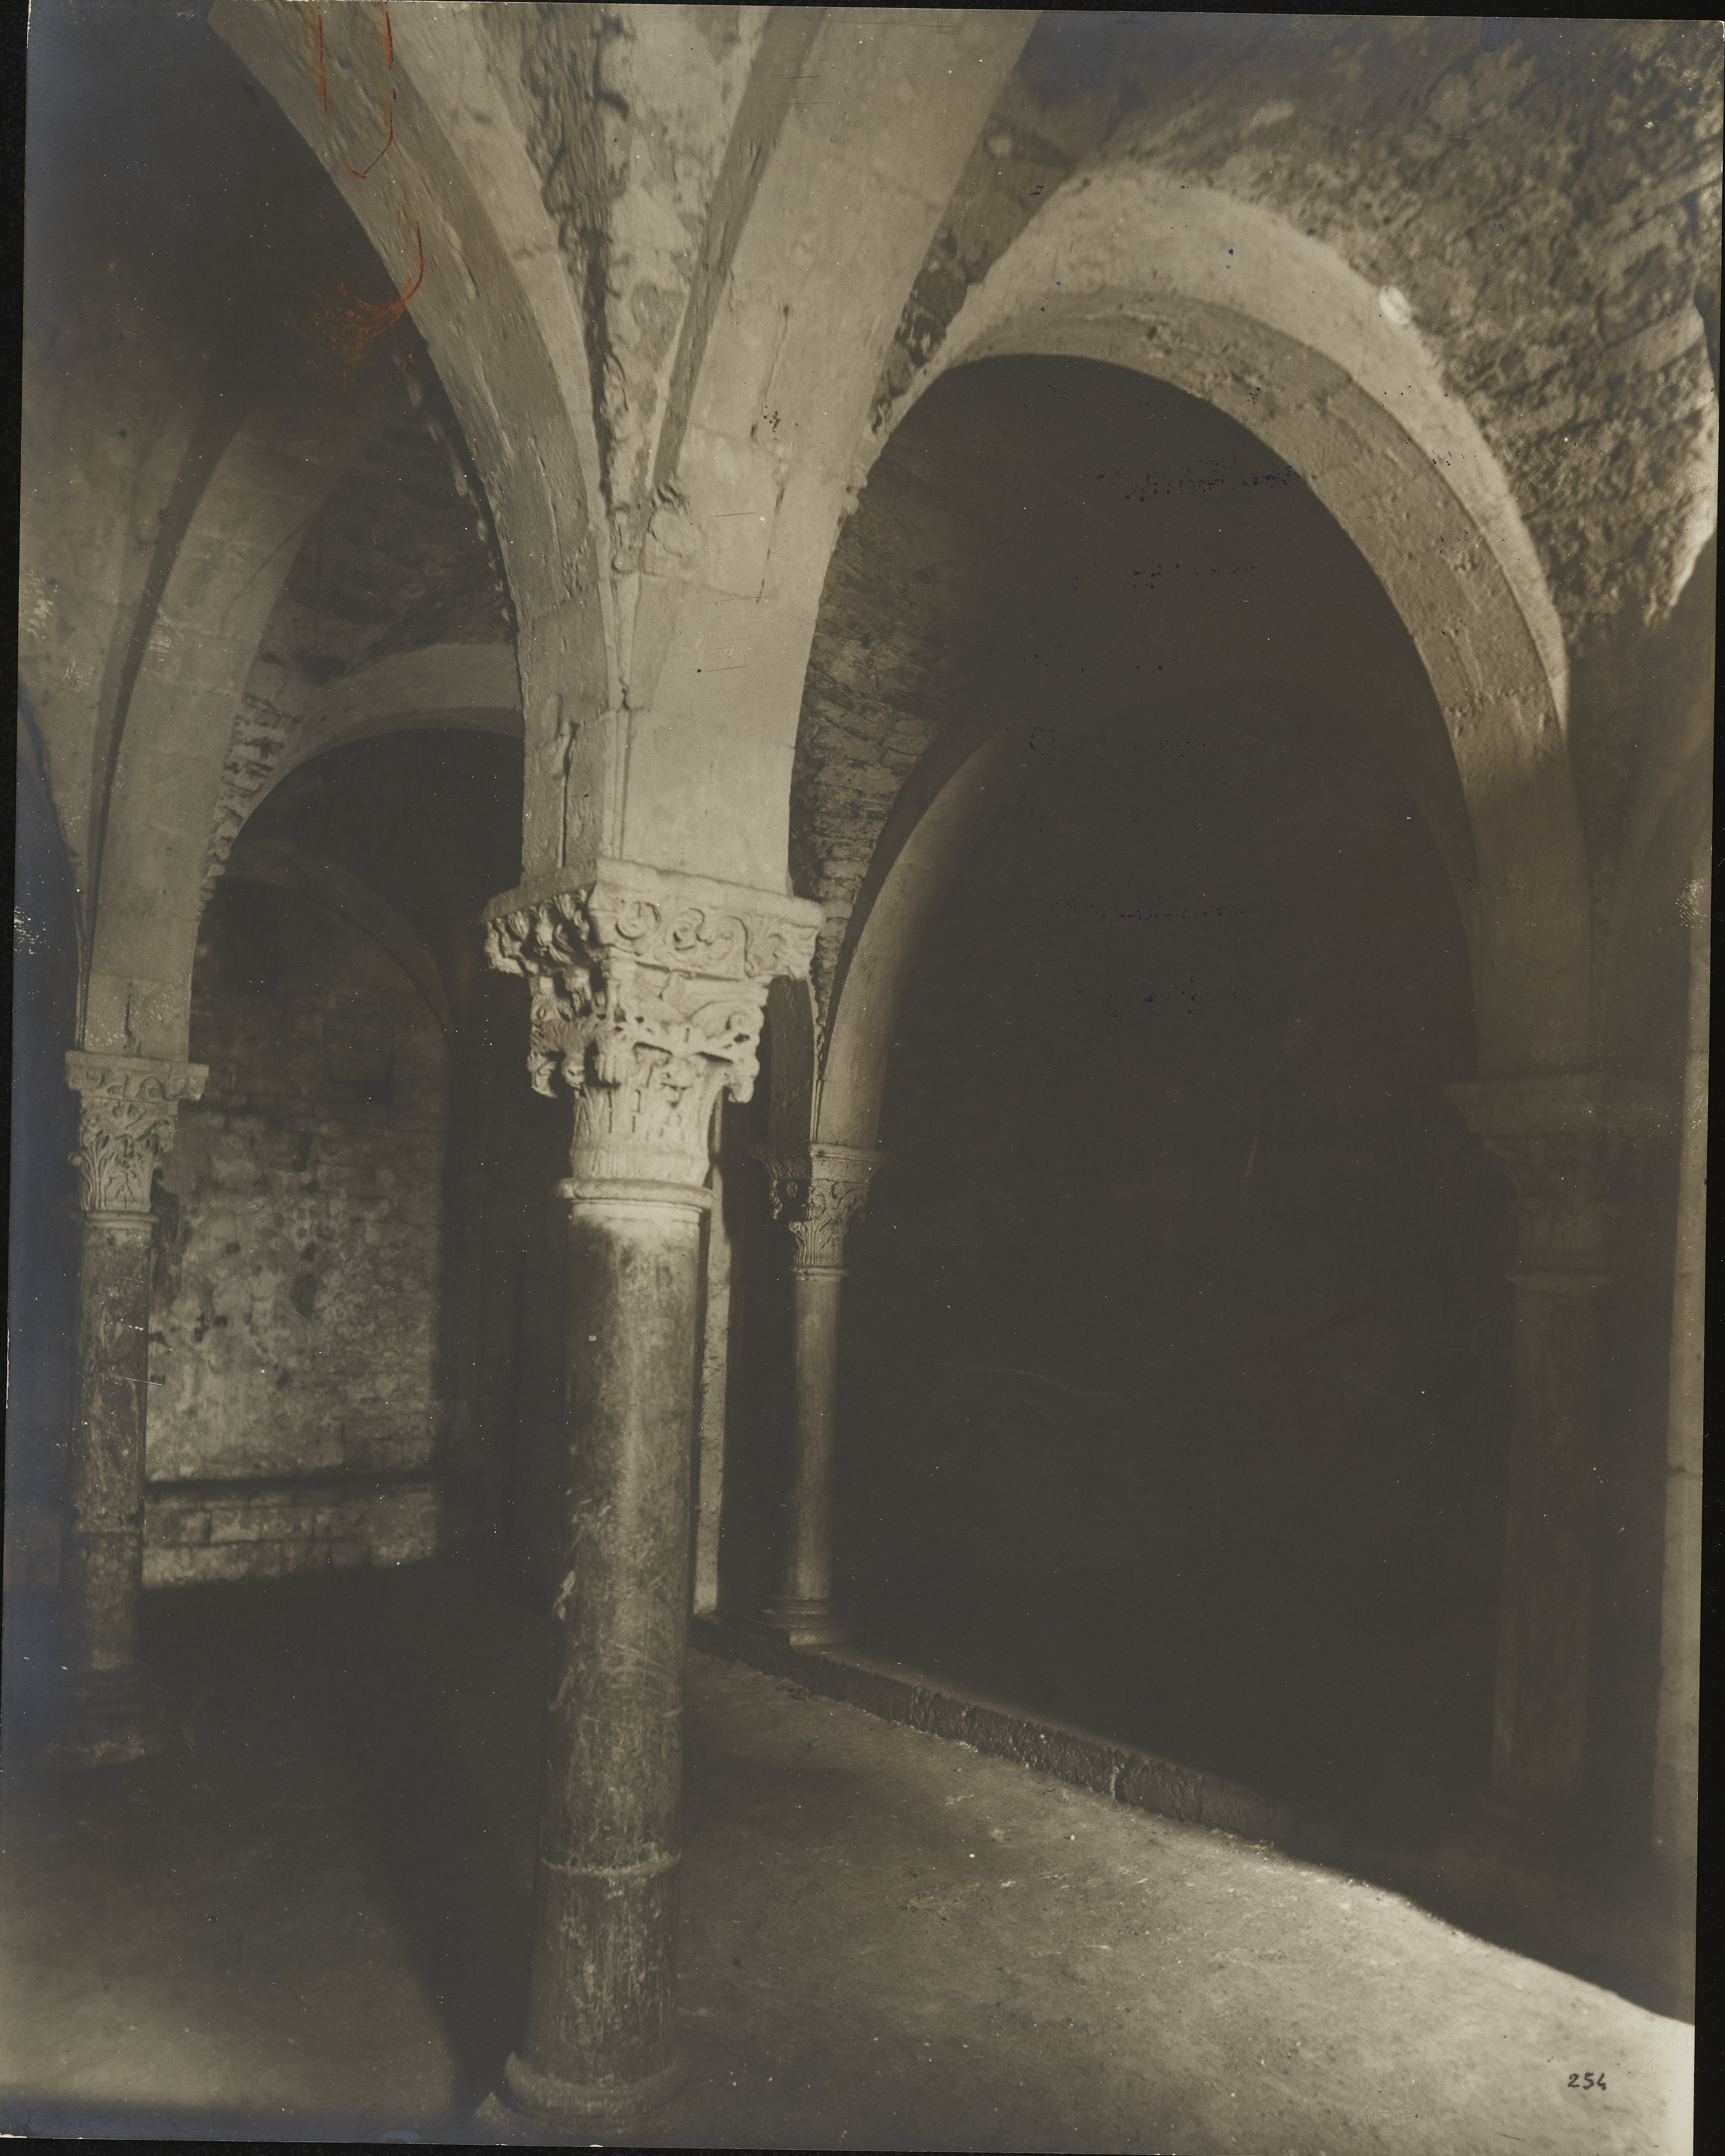 Fotografo non identificato, Brindisi - Chiesa di S. Lucia, la cripta, 1901-1925, gelatina ai sali d'argento, MPI6019198